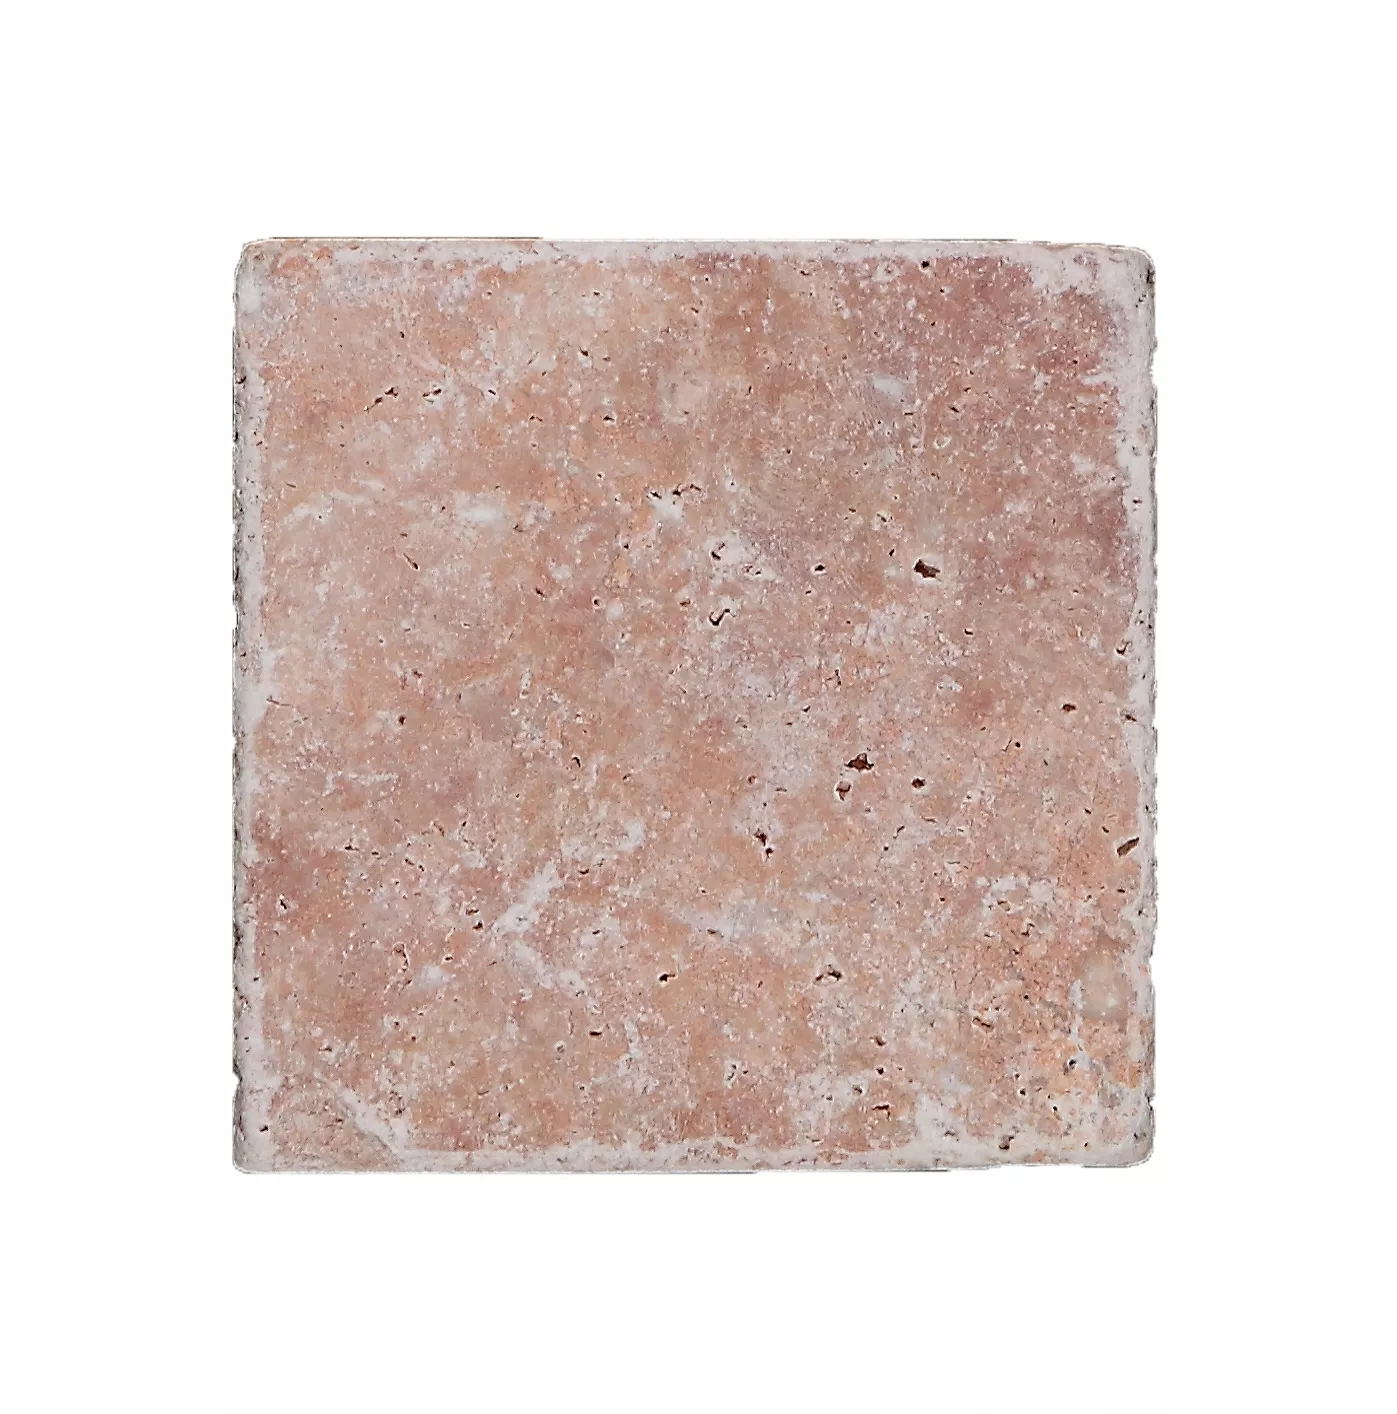 Πλακάκια Aπό Φυσική Πέτρα Είδος Ασβεστόλιθου Usantos Rosso 30,5x30,5cm